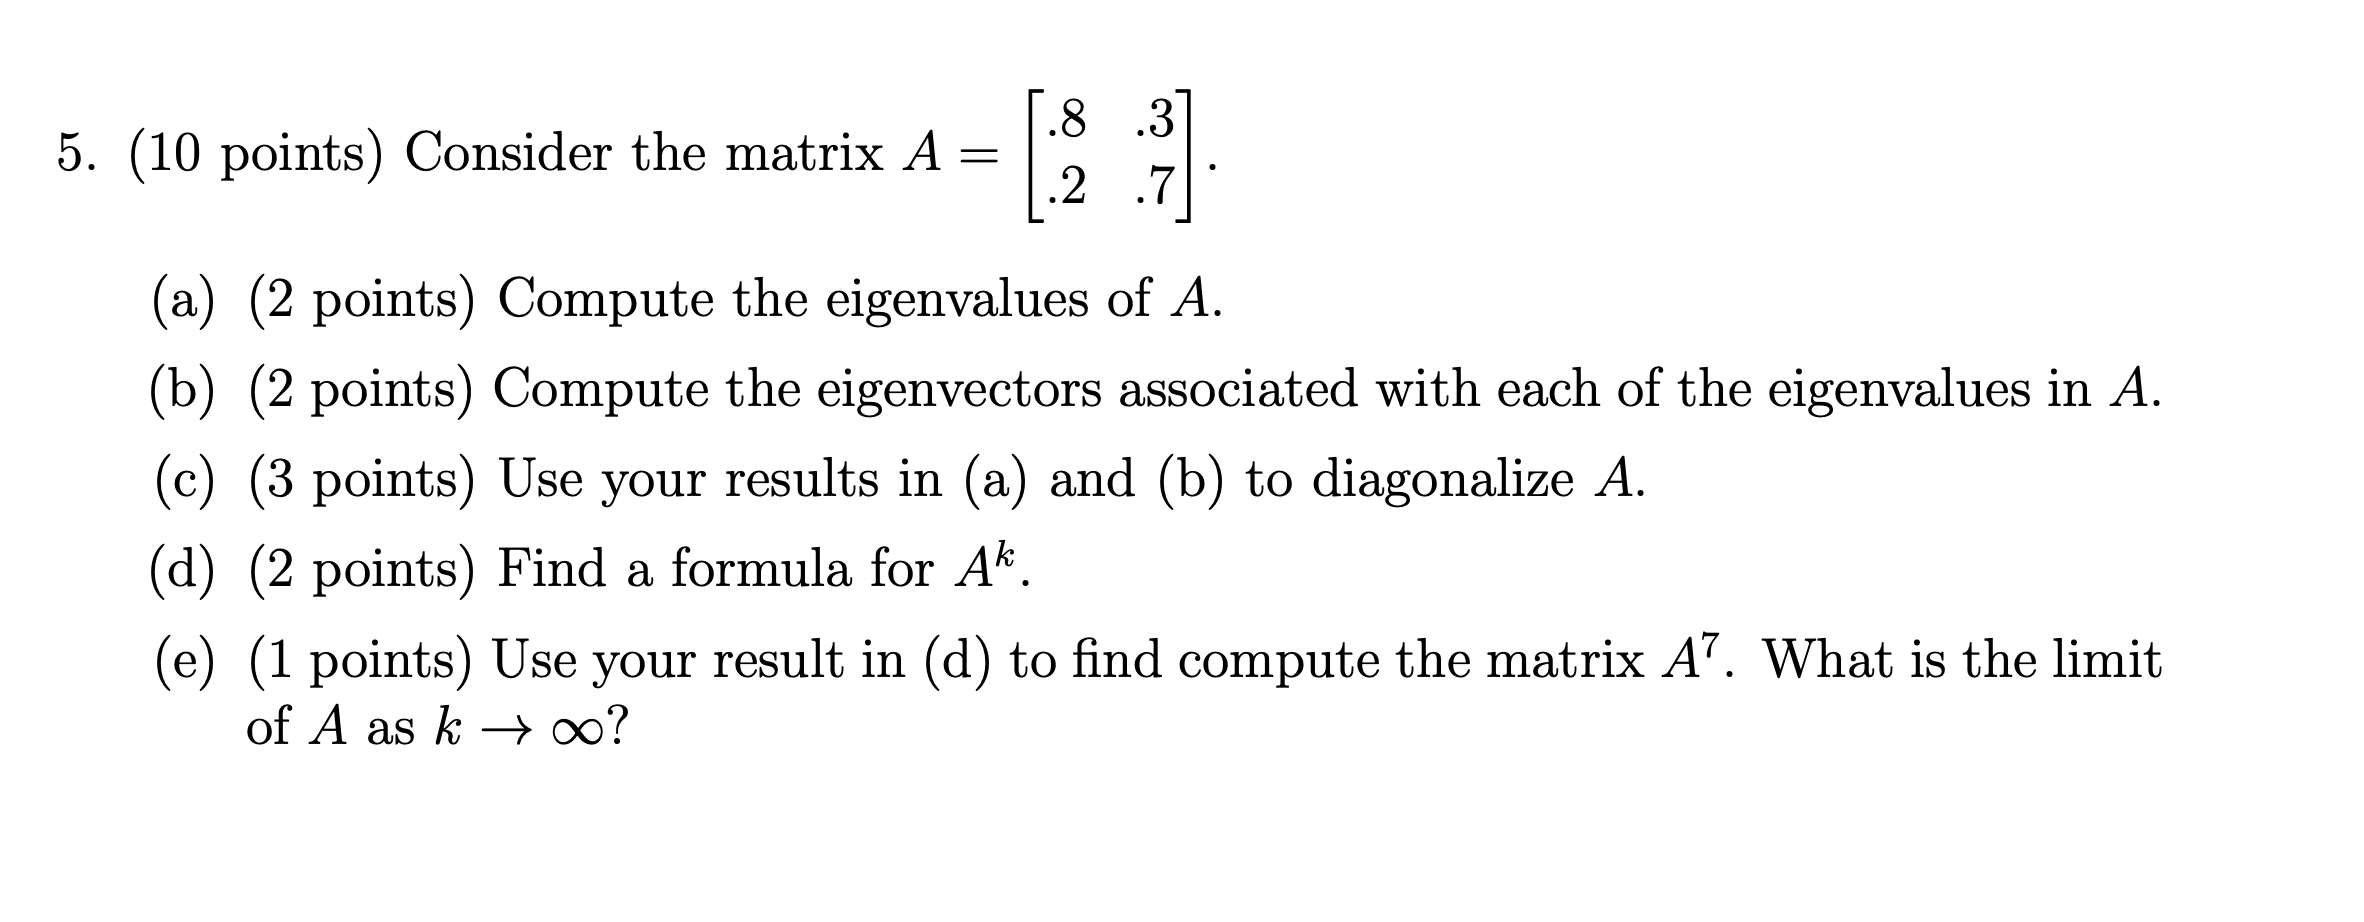 matrix a^2